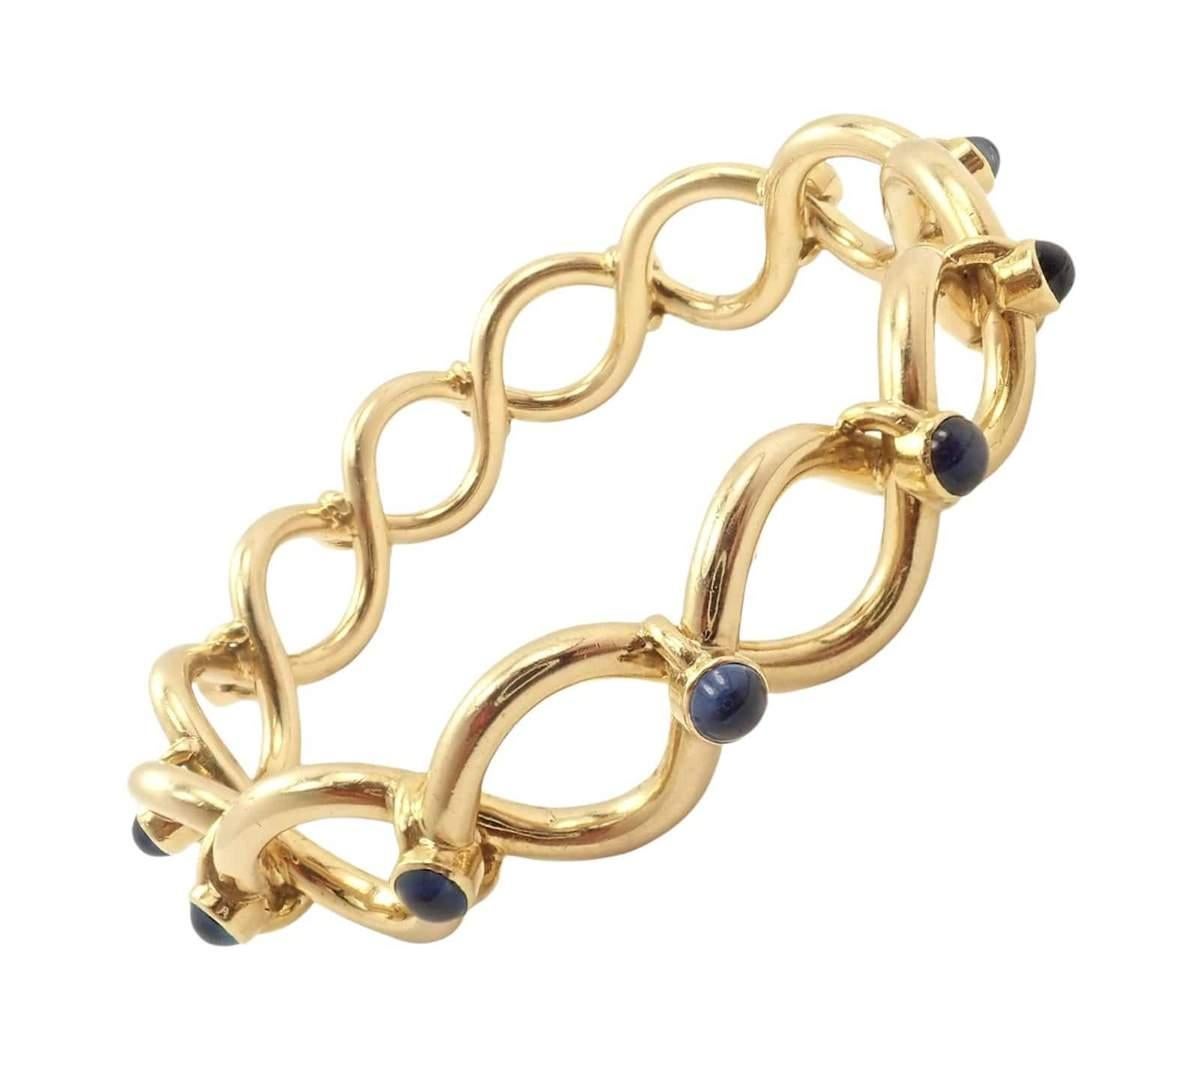 Dies ist eine seltene & Vintage Tiffany & Co. 18k Gelbgold blauer Saphir Armreif Armband. 
Dieses Tiffany-Armband wurde in Frankreich hergestellt.
Metall: 18k Gelbgold
Länge: 7,25